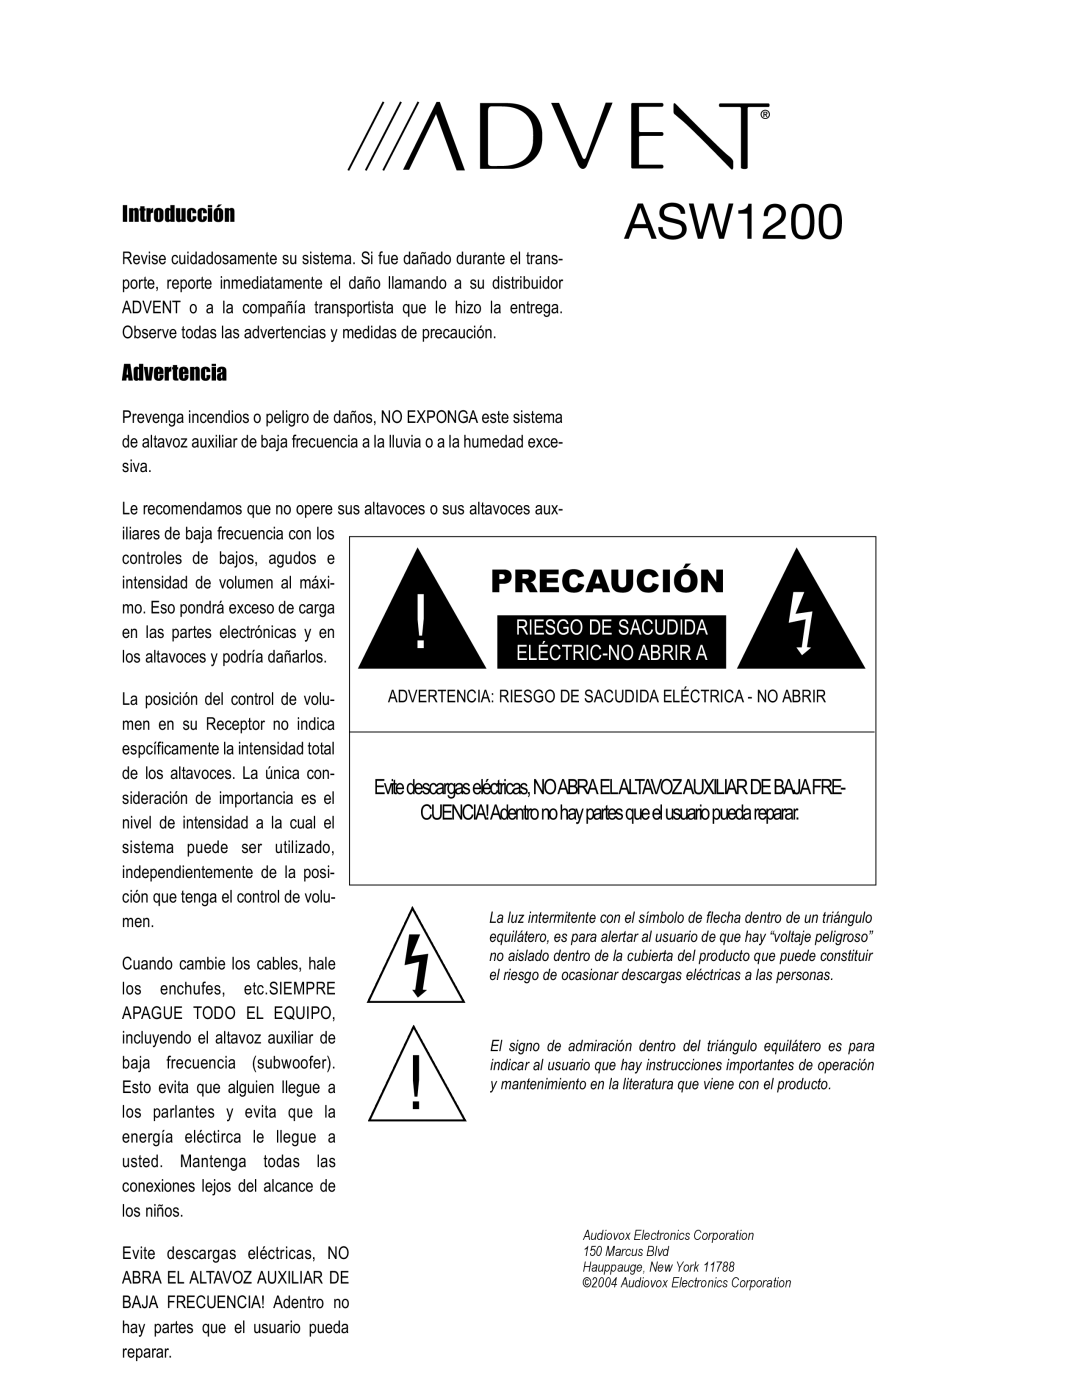 Technicolor - Thomson Advent Precaución, Introducción, Advertencia, ASW1200, Riesgo De Sacudida, Eléctric-Noabrir A 